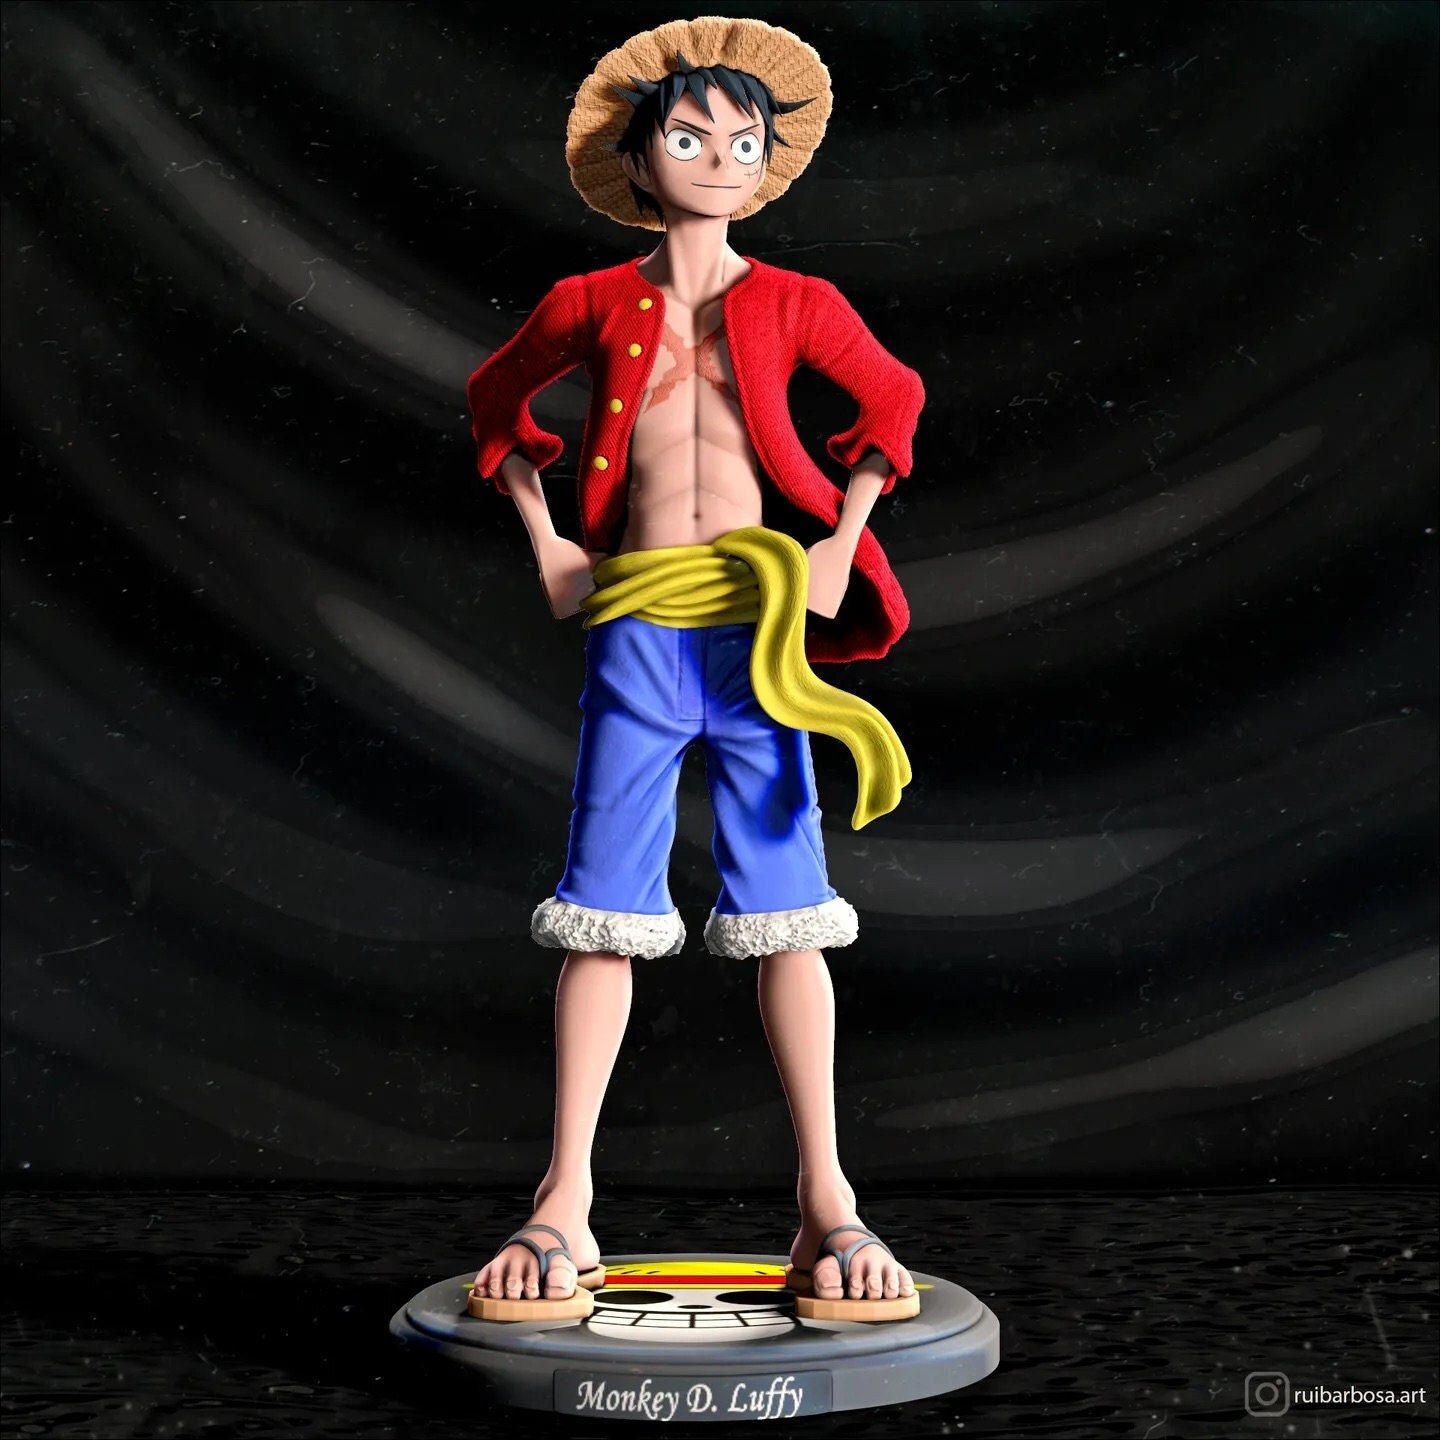 Anime One Piece Figure Fire Fist Luffy Ace Action Figures PVC Model Toys  Figure Figuras Figura de ação